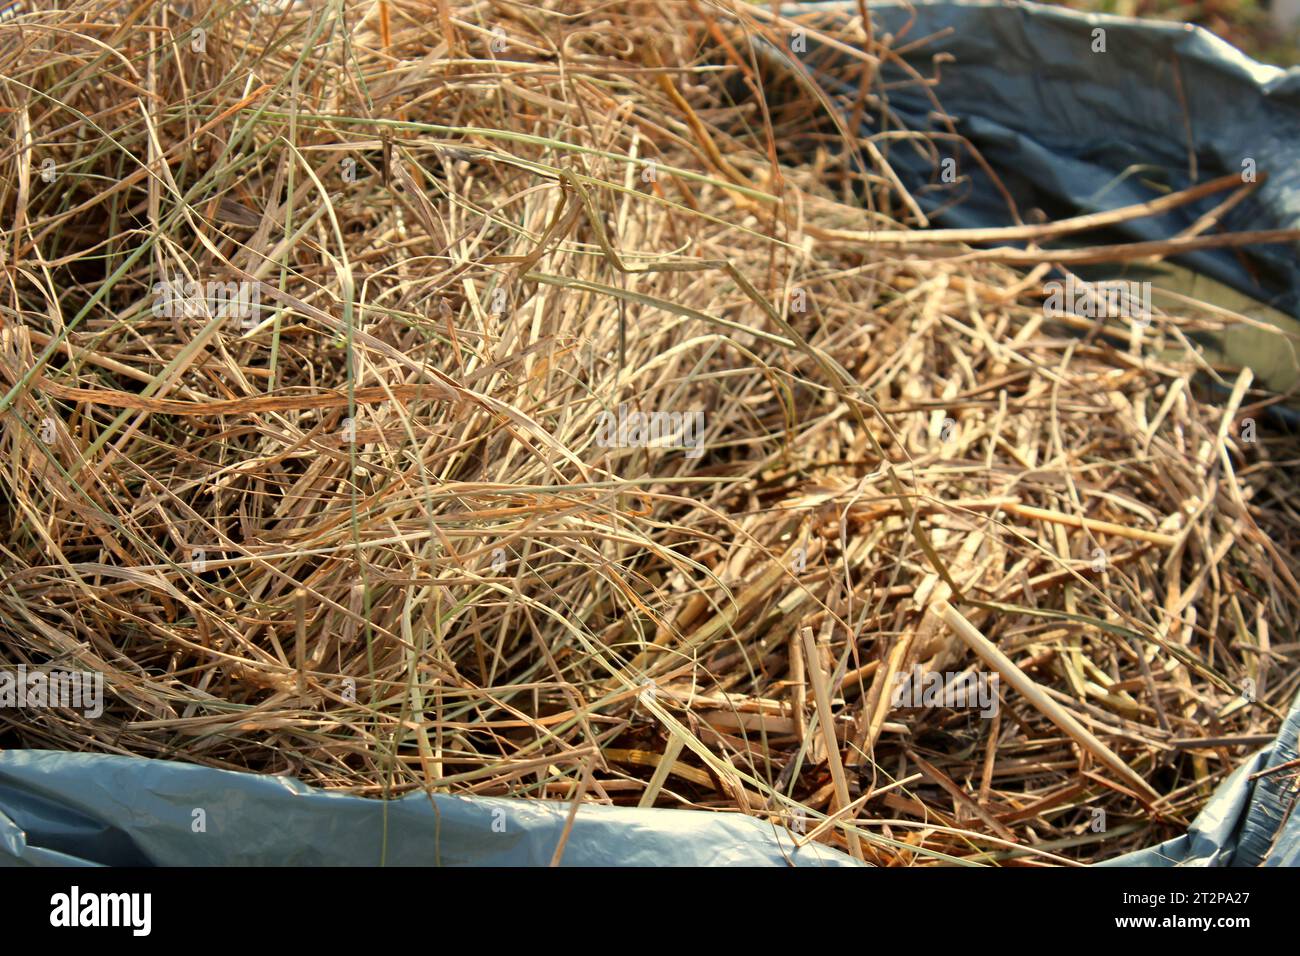 Fieno, paglia o erba secca, utilizzati per coprire, proteggere e nutrire il suolo, il compostaggio, l’alimentazione animale e per la biocostruzione. Foto Stock